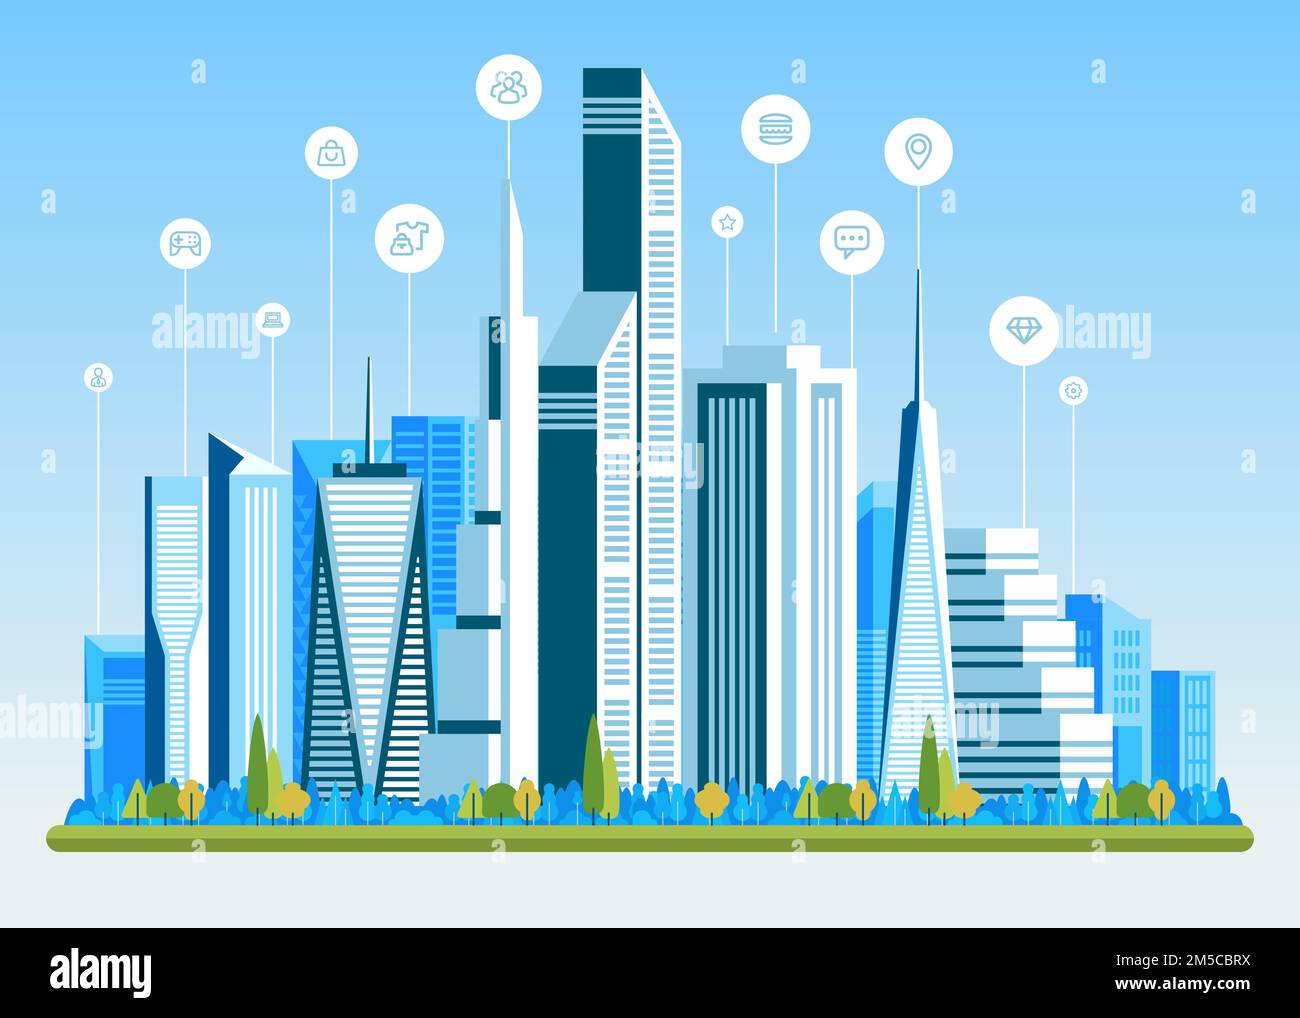 Paisaje urbano con edificios, rascacielos y tráfico de transporte. Concepto de ciudad inteligente con diferentes iconos. Ilustración vectorial. Ilustración del Vector